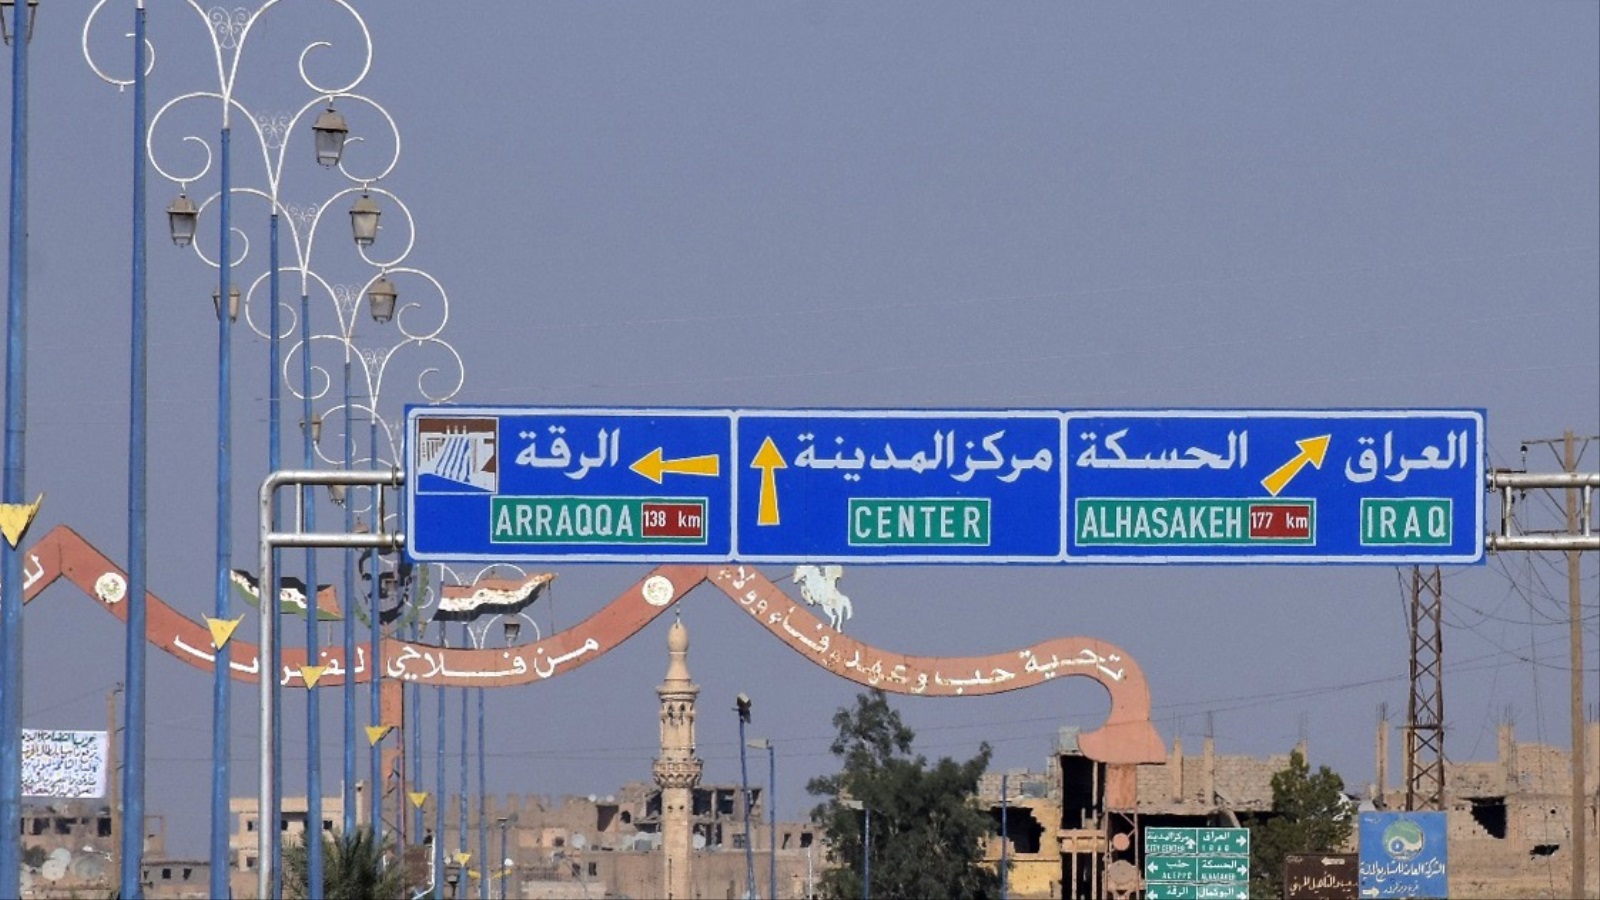 ‪دير الزور ترتبط بحدود مع العراق والأردن وتشكل نقطة وصل بين خمس محافظات سورية‬ (غيتي)